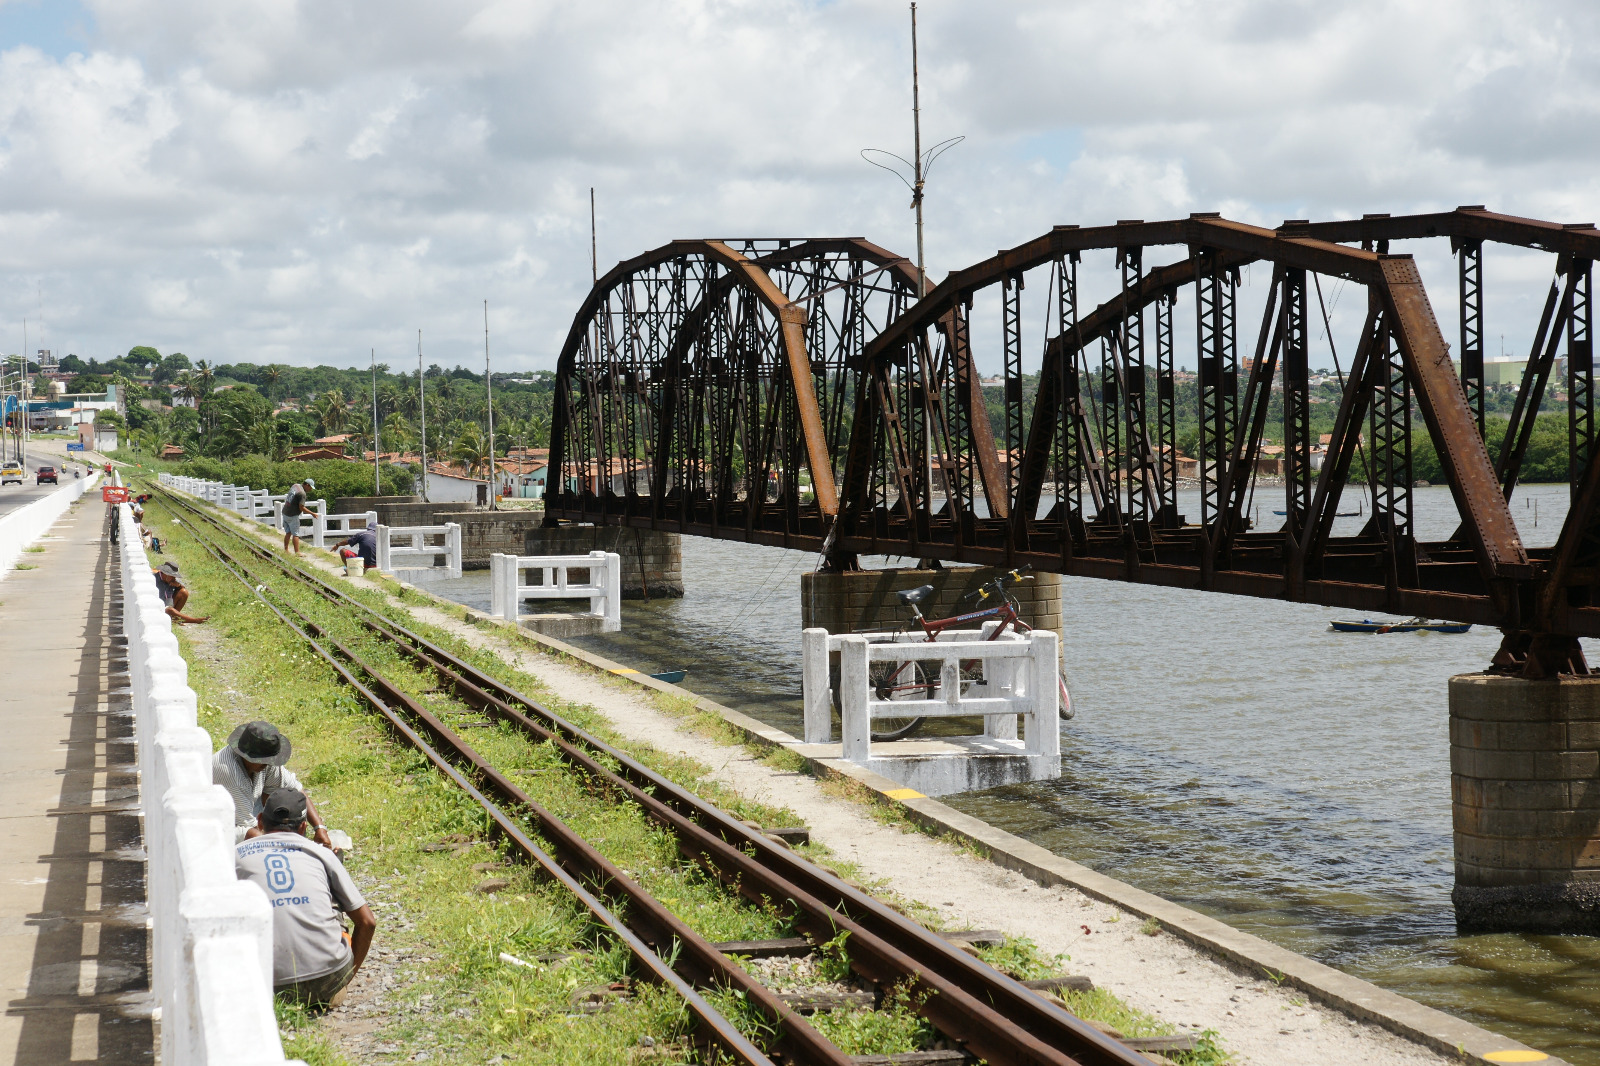 Justiça exige revitalização da Ponte de Ferro de Igapó